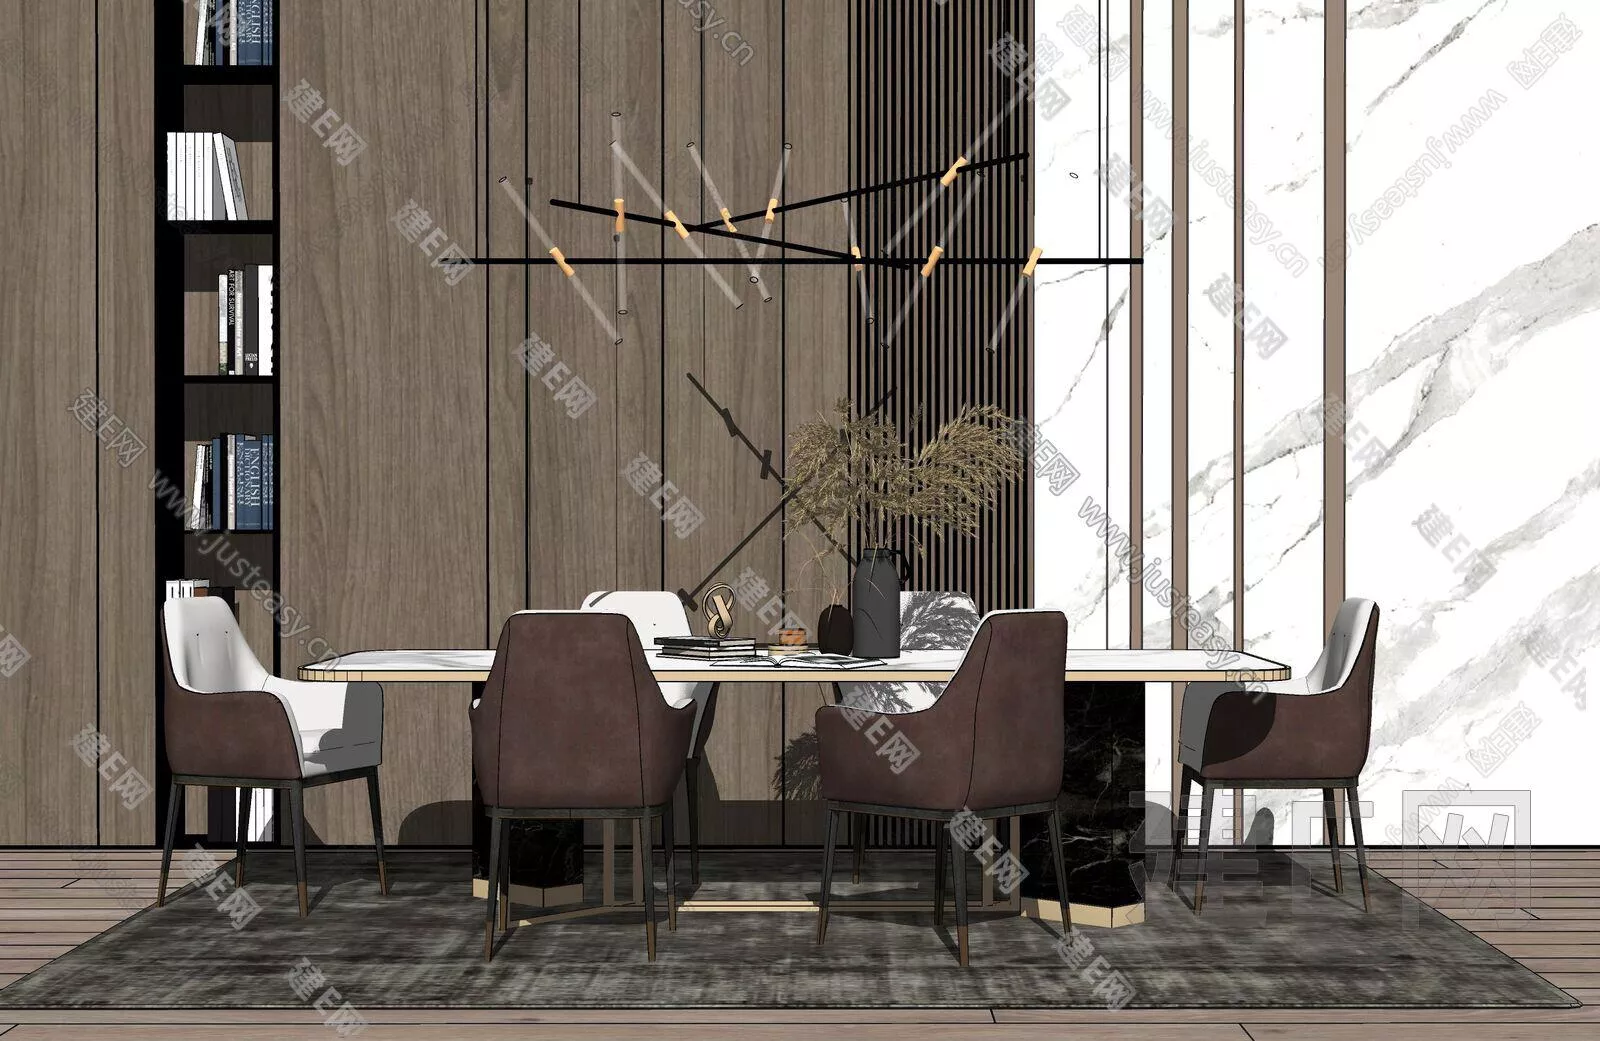 MODERN DINING TABLE SET - SKETCHUP 3D MODEL - ENSCAPE - 109264979